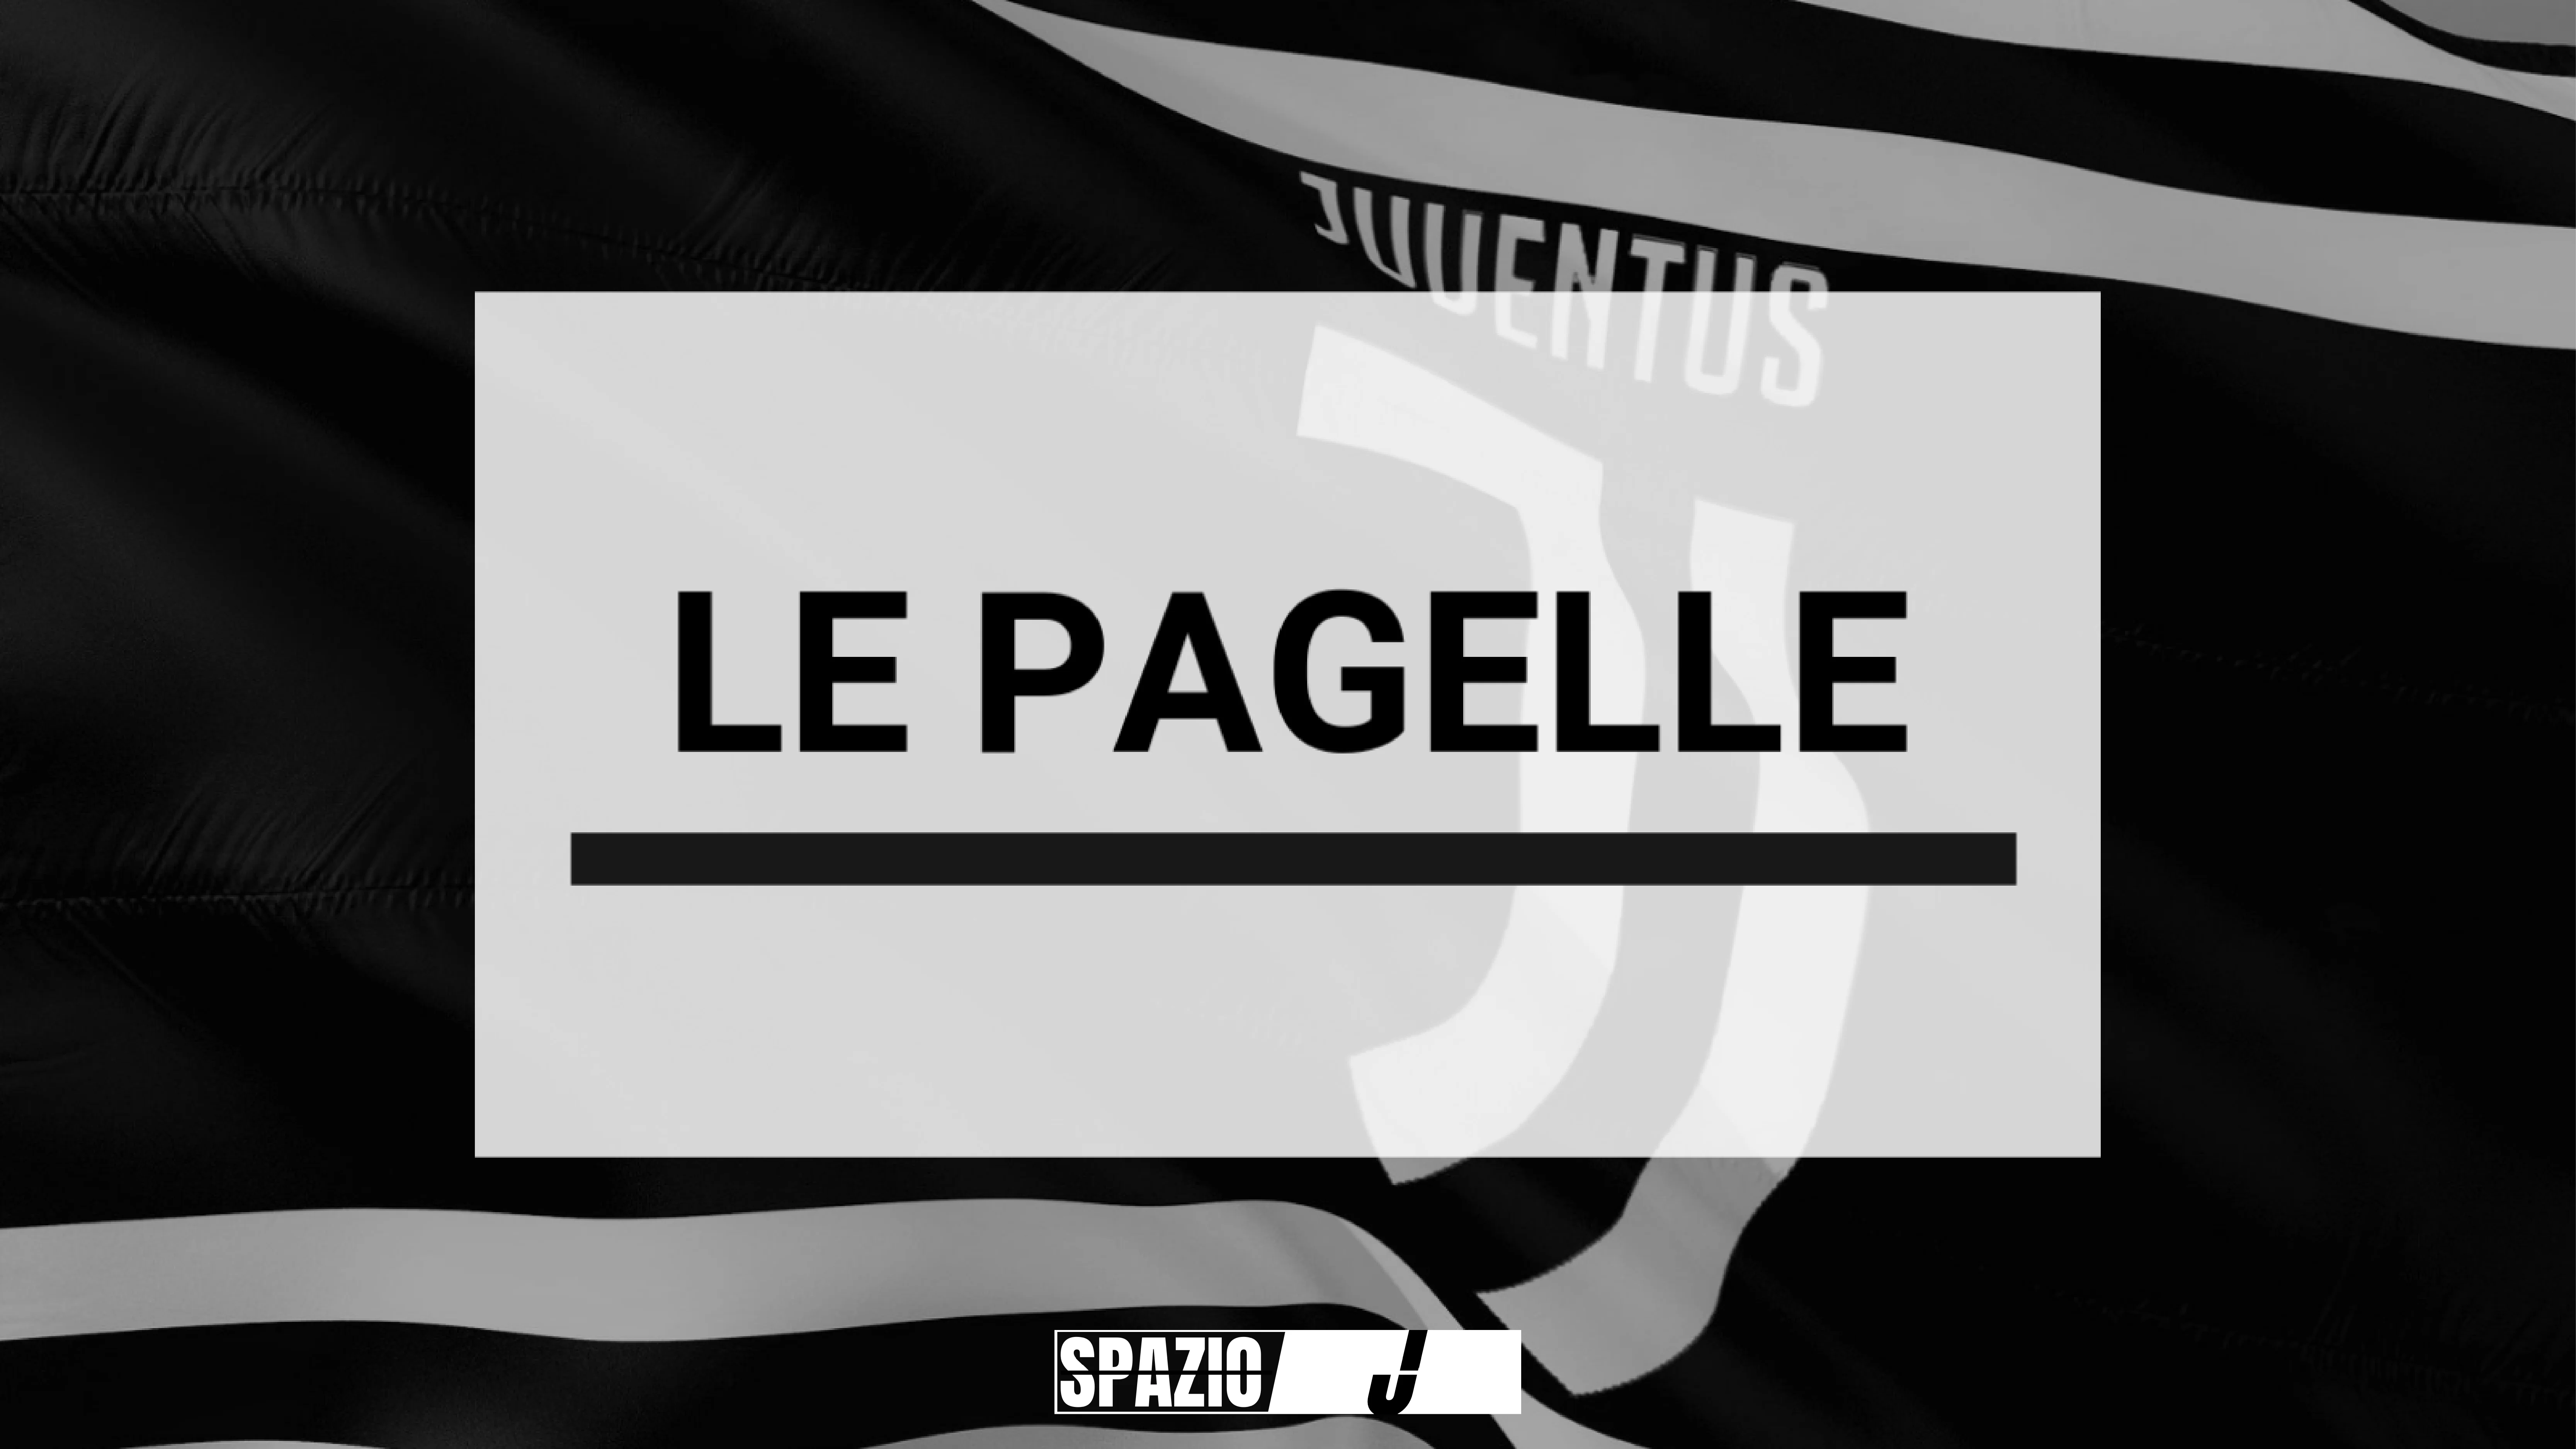 Roma-Juventus Women 1-2 | le pagelle: Rosucci decisiva, Peyraud-Magnin da rivedere